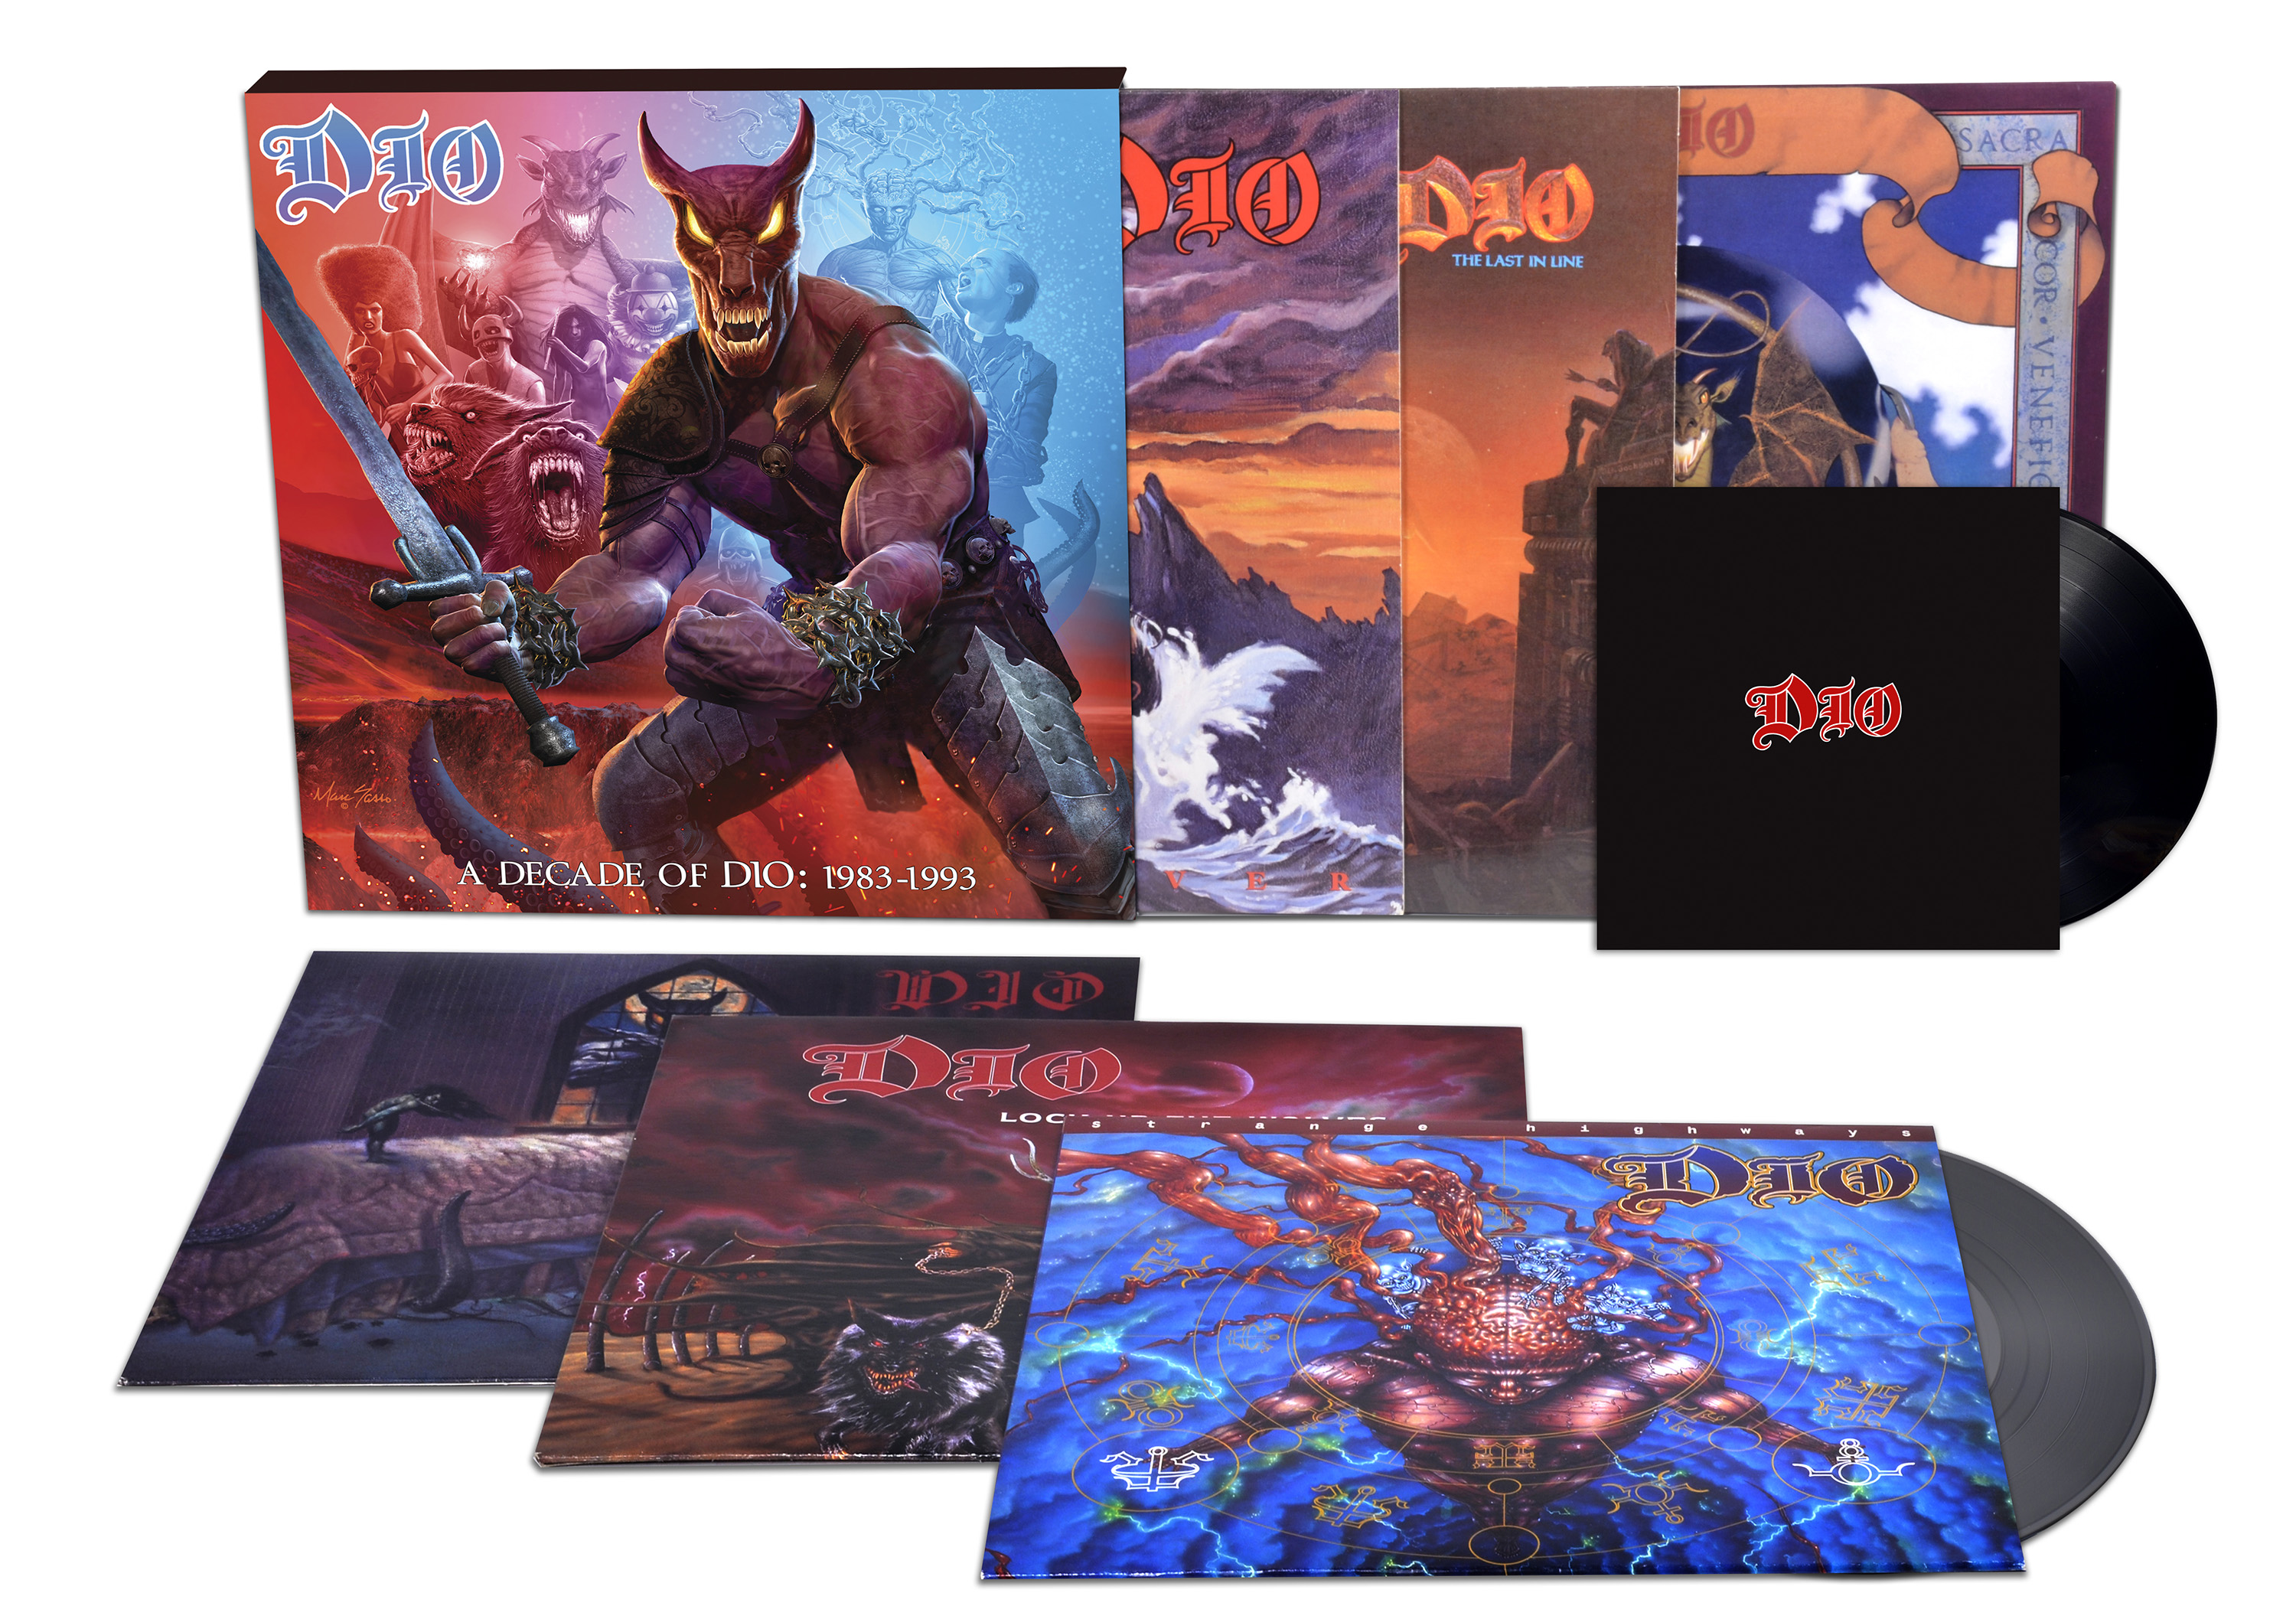 "A decade of Dio: 1983 - 1993" (Vinyl Boxed Set). Dio 1993. Dio a decade of Dio. Dio 5